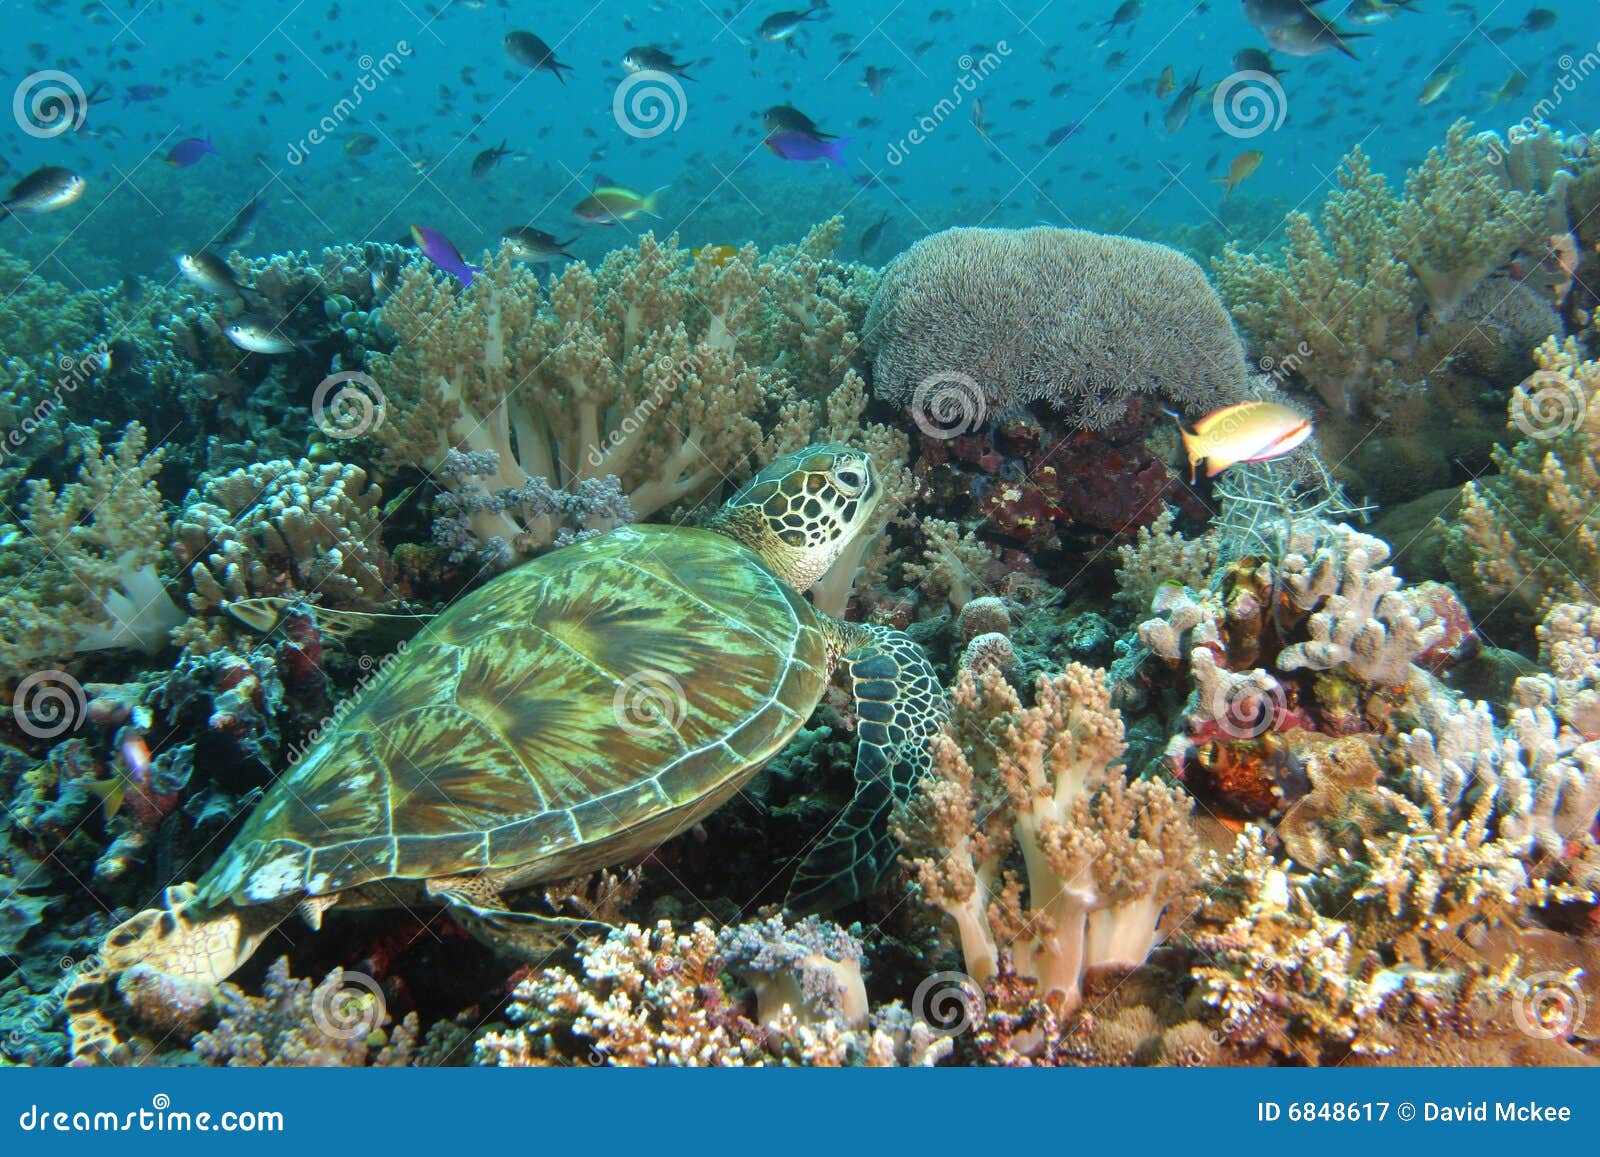 礁石休息的乌龟. 休息南热带turtel的亚洲东部礁石